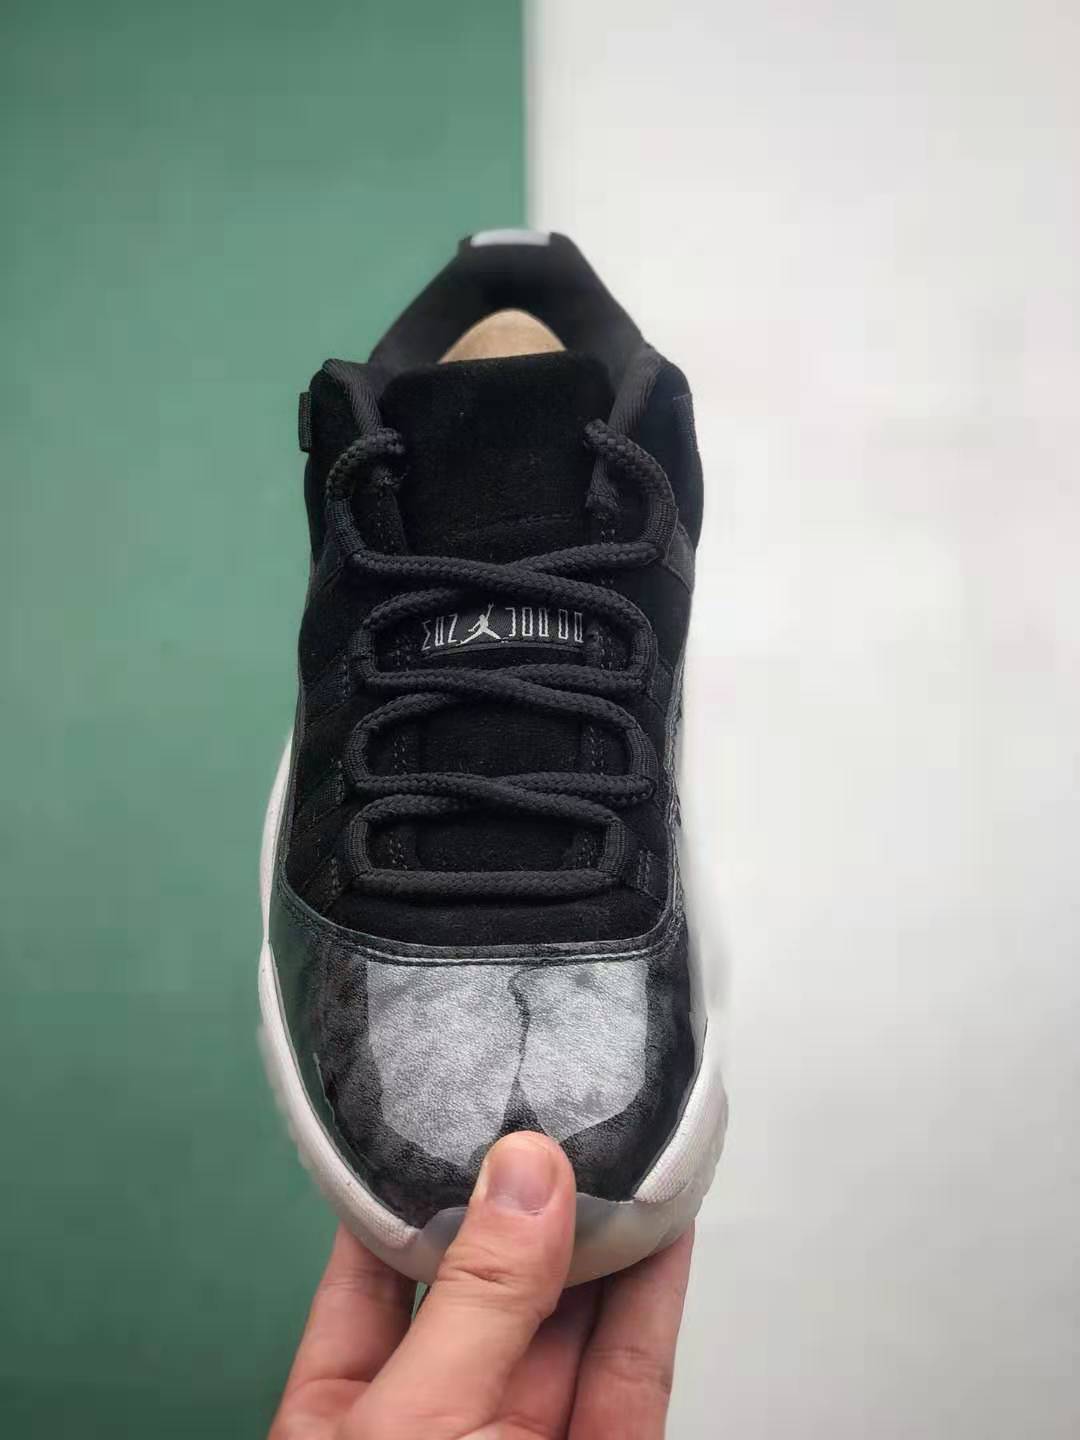 Air Jordan 11 Retro Low 'Barons' 528895-010 - Premium Sneaker for Sale